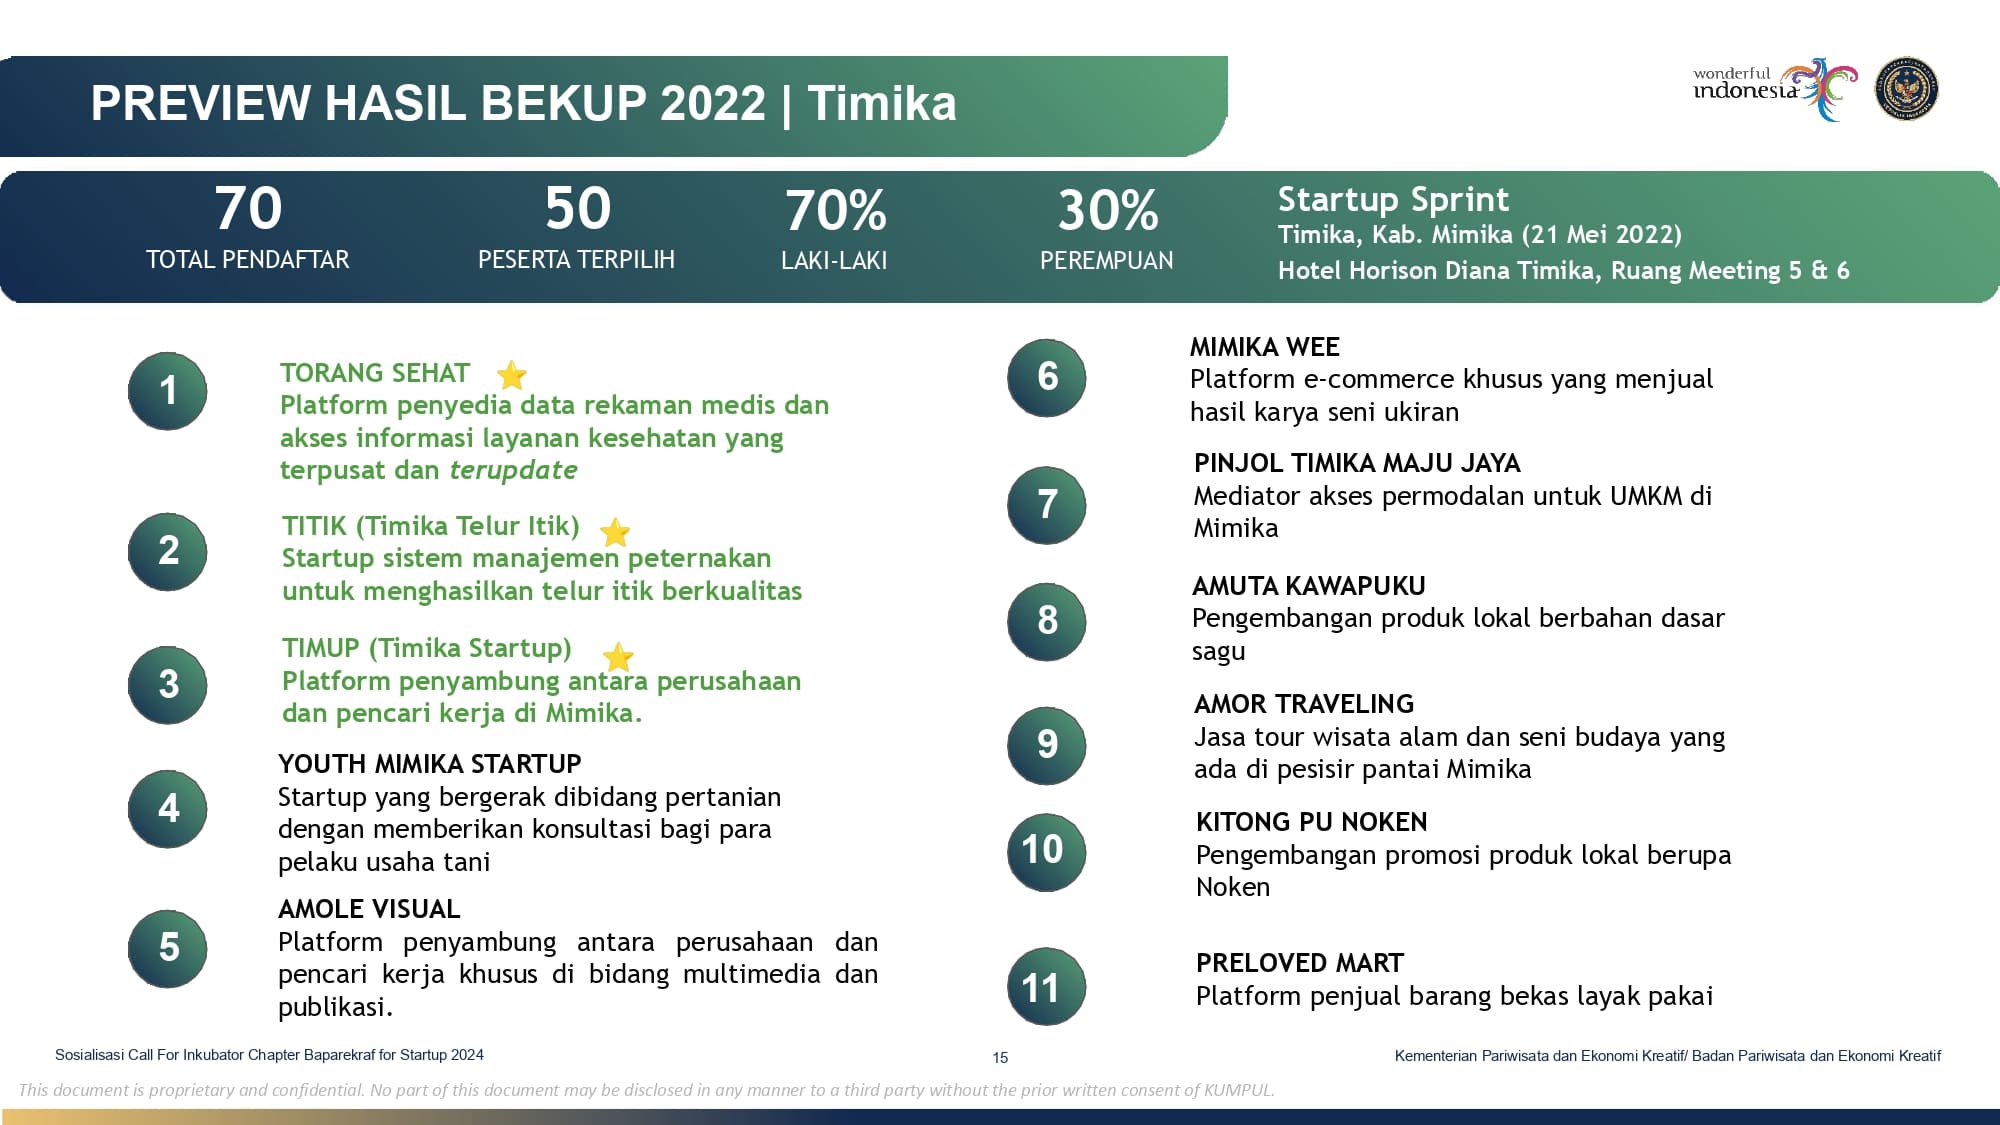 YRA_Sosialisasi Call For Inkubator Chapter Baparekraf for Startup 2024_230424_page-0015